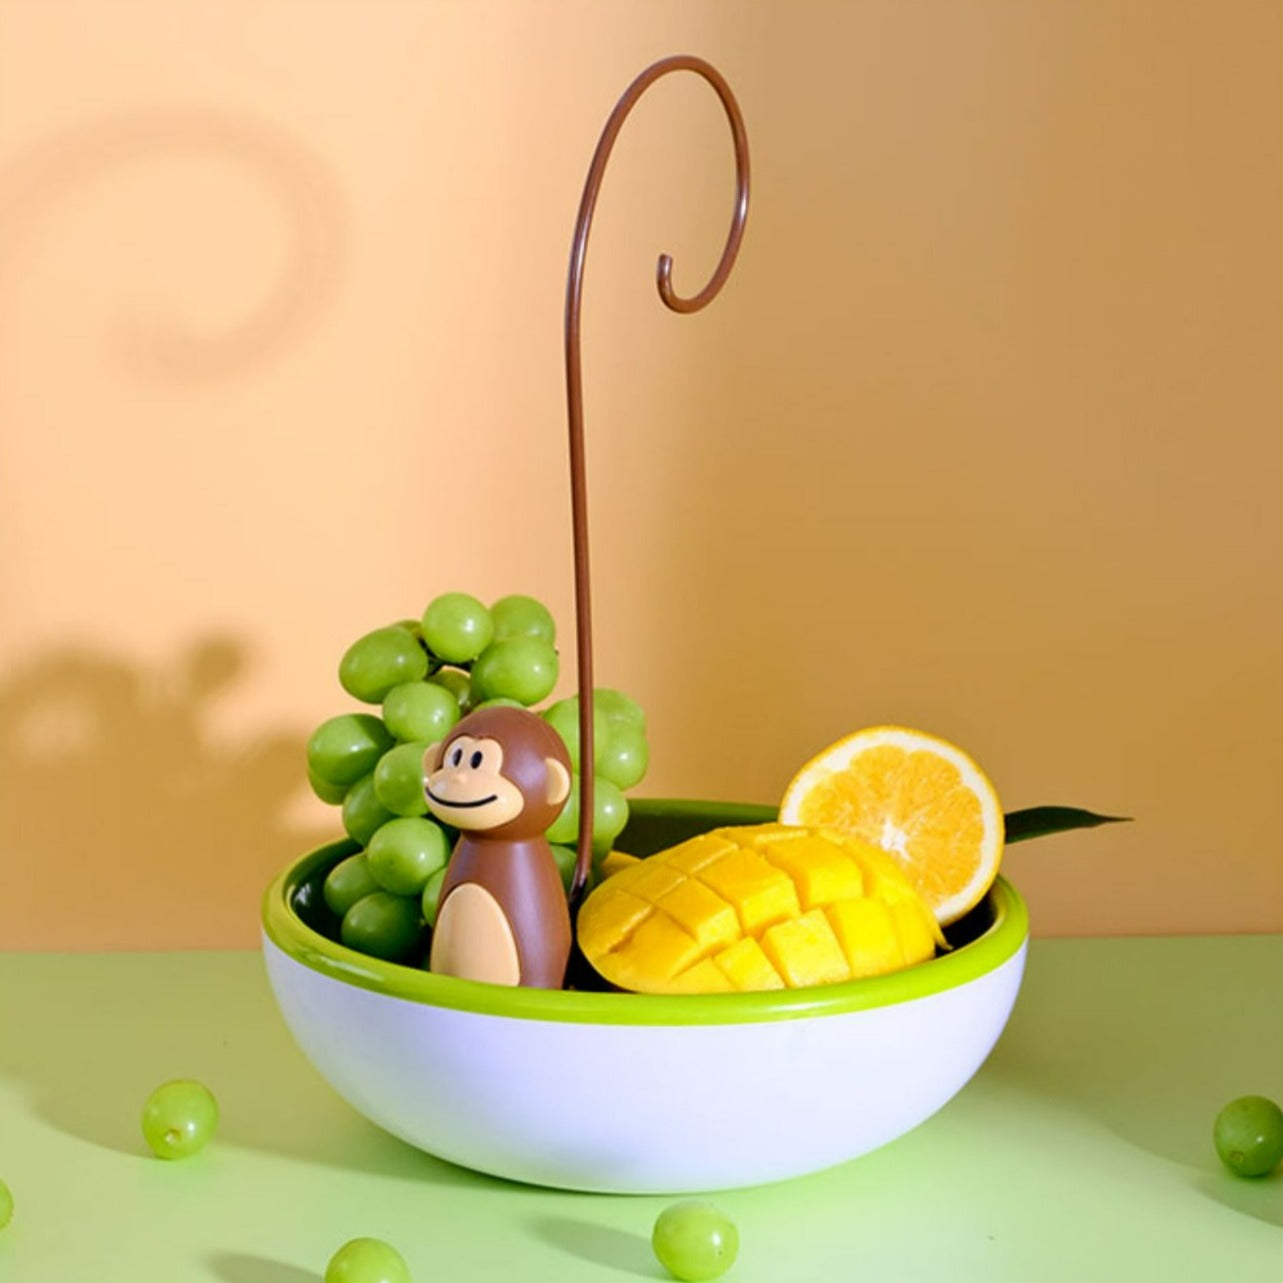 Organize suas frutas com a Fruteira Monkey! Seu design adorável e funcional traz alegria à cozinha. Pendure cachos de bananas e acomode outras frutas em sua base espaçosa. Uma peça decorativa encantadora que combina utilidade e beleza. Deixe a organização das frutas divertida e cheia de estilo!